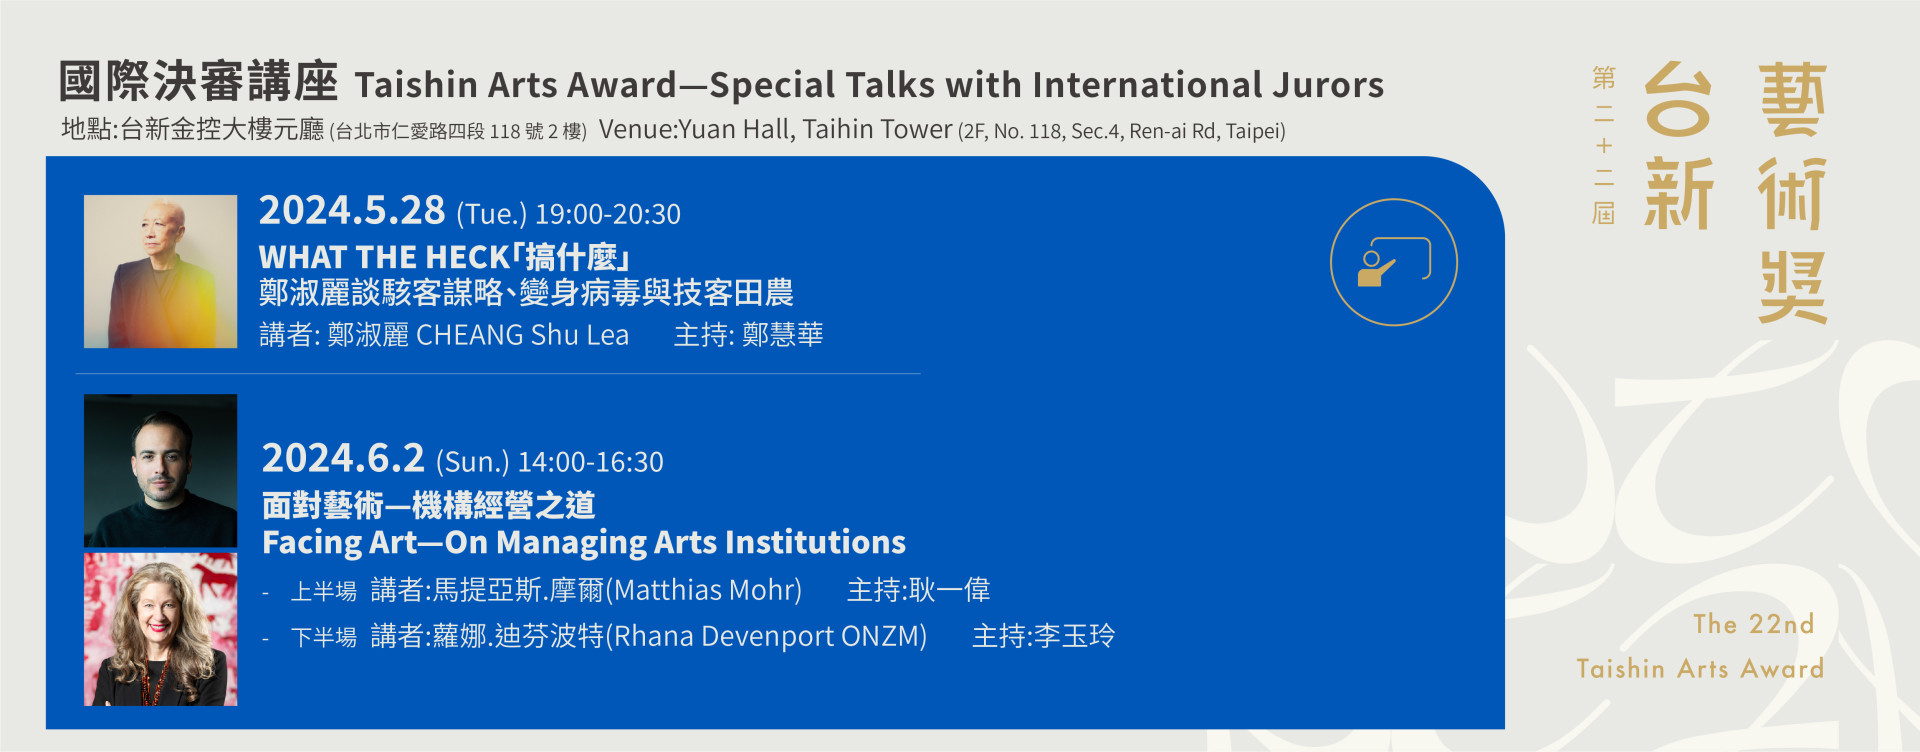 Taishin Arts Award— Special Talks with International Jurors